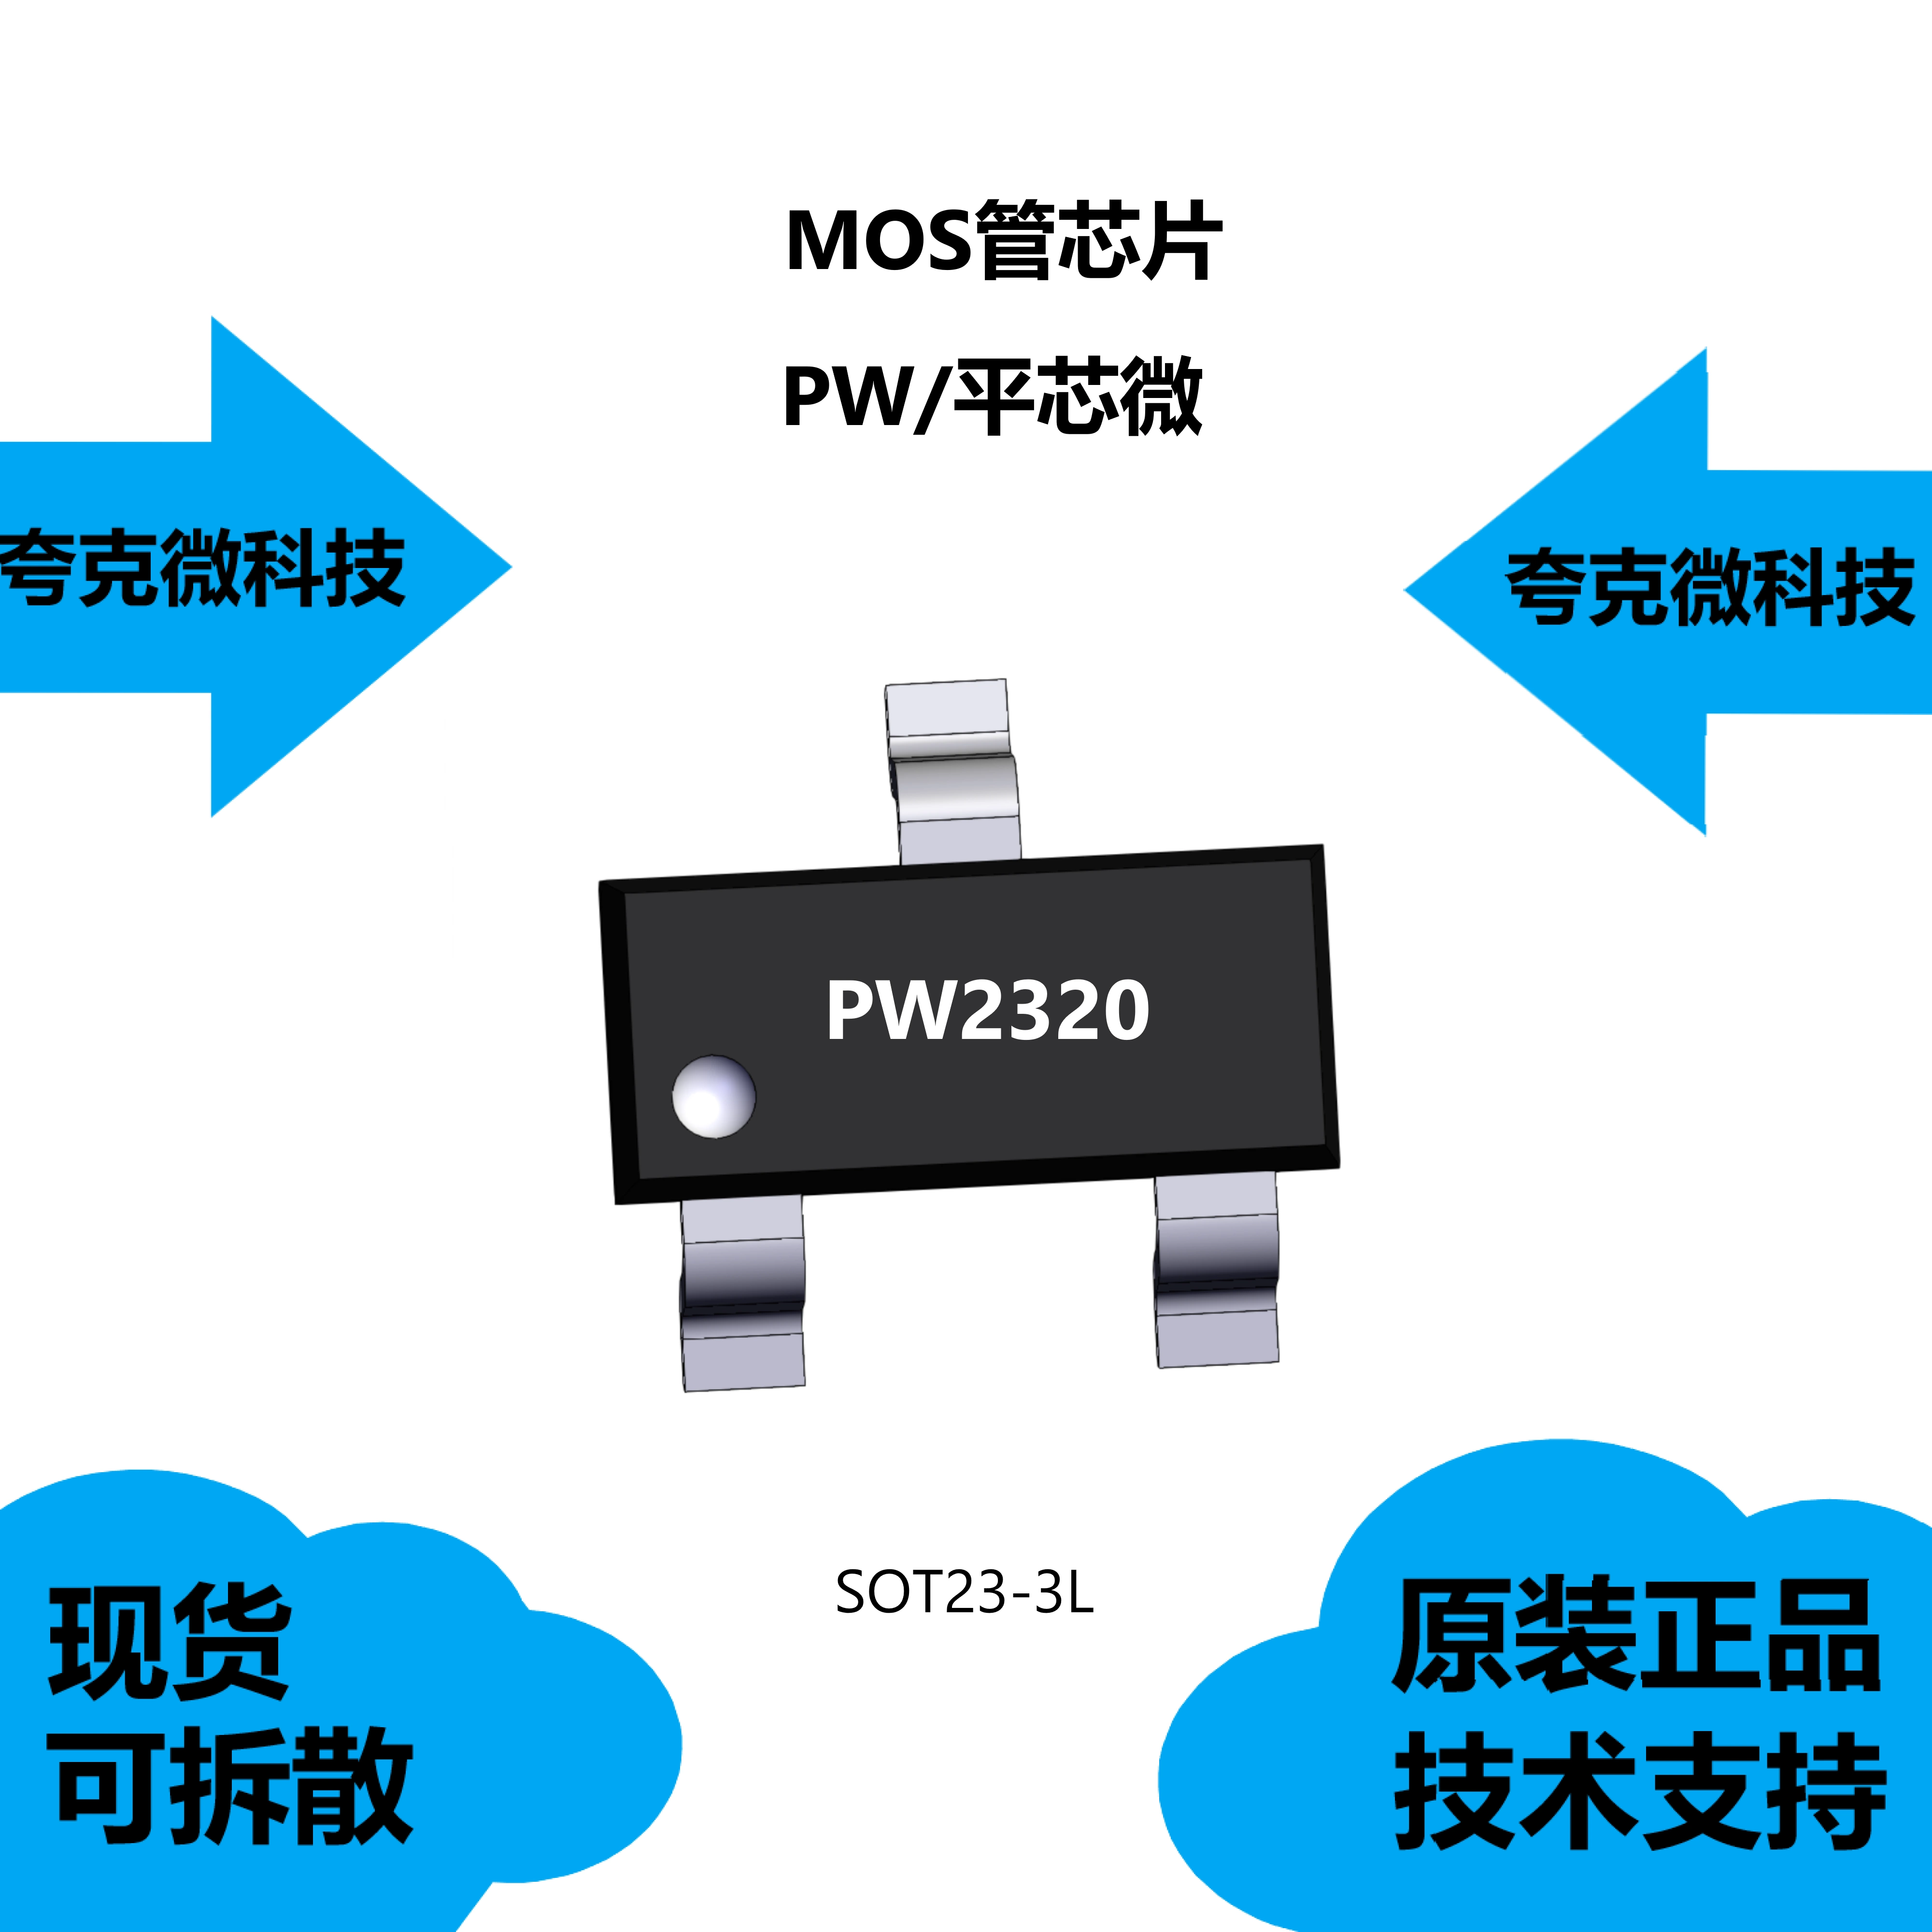 chức năng ic 7447 Chip PW2320 ban đầu được cung cấp, danh mục là ống MOS, có thể cung cấp hỗ trợ kỹ thuật chức năng ic 7447 chức năng của ic 4558